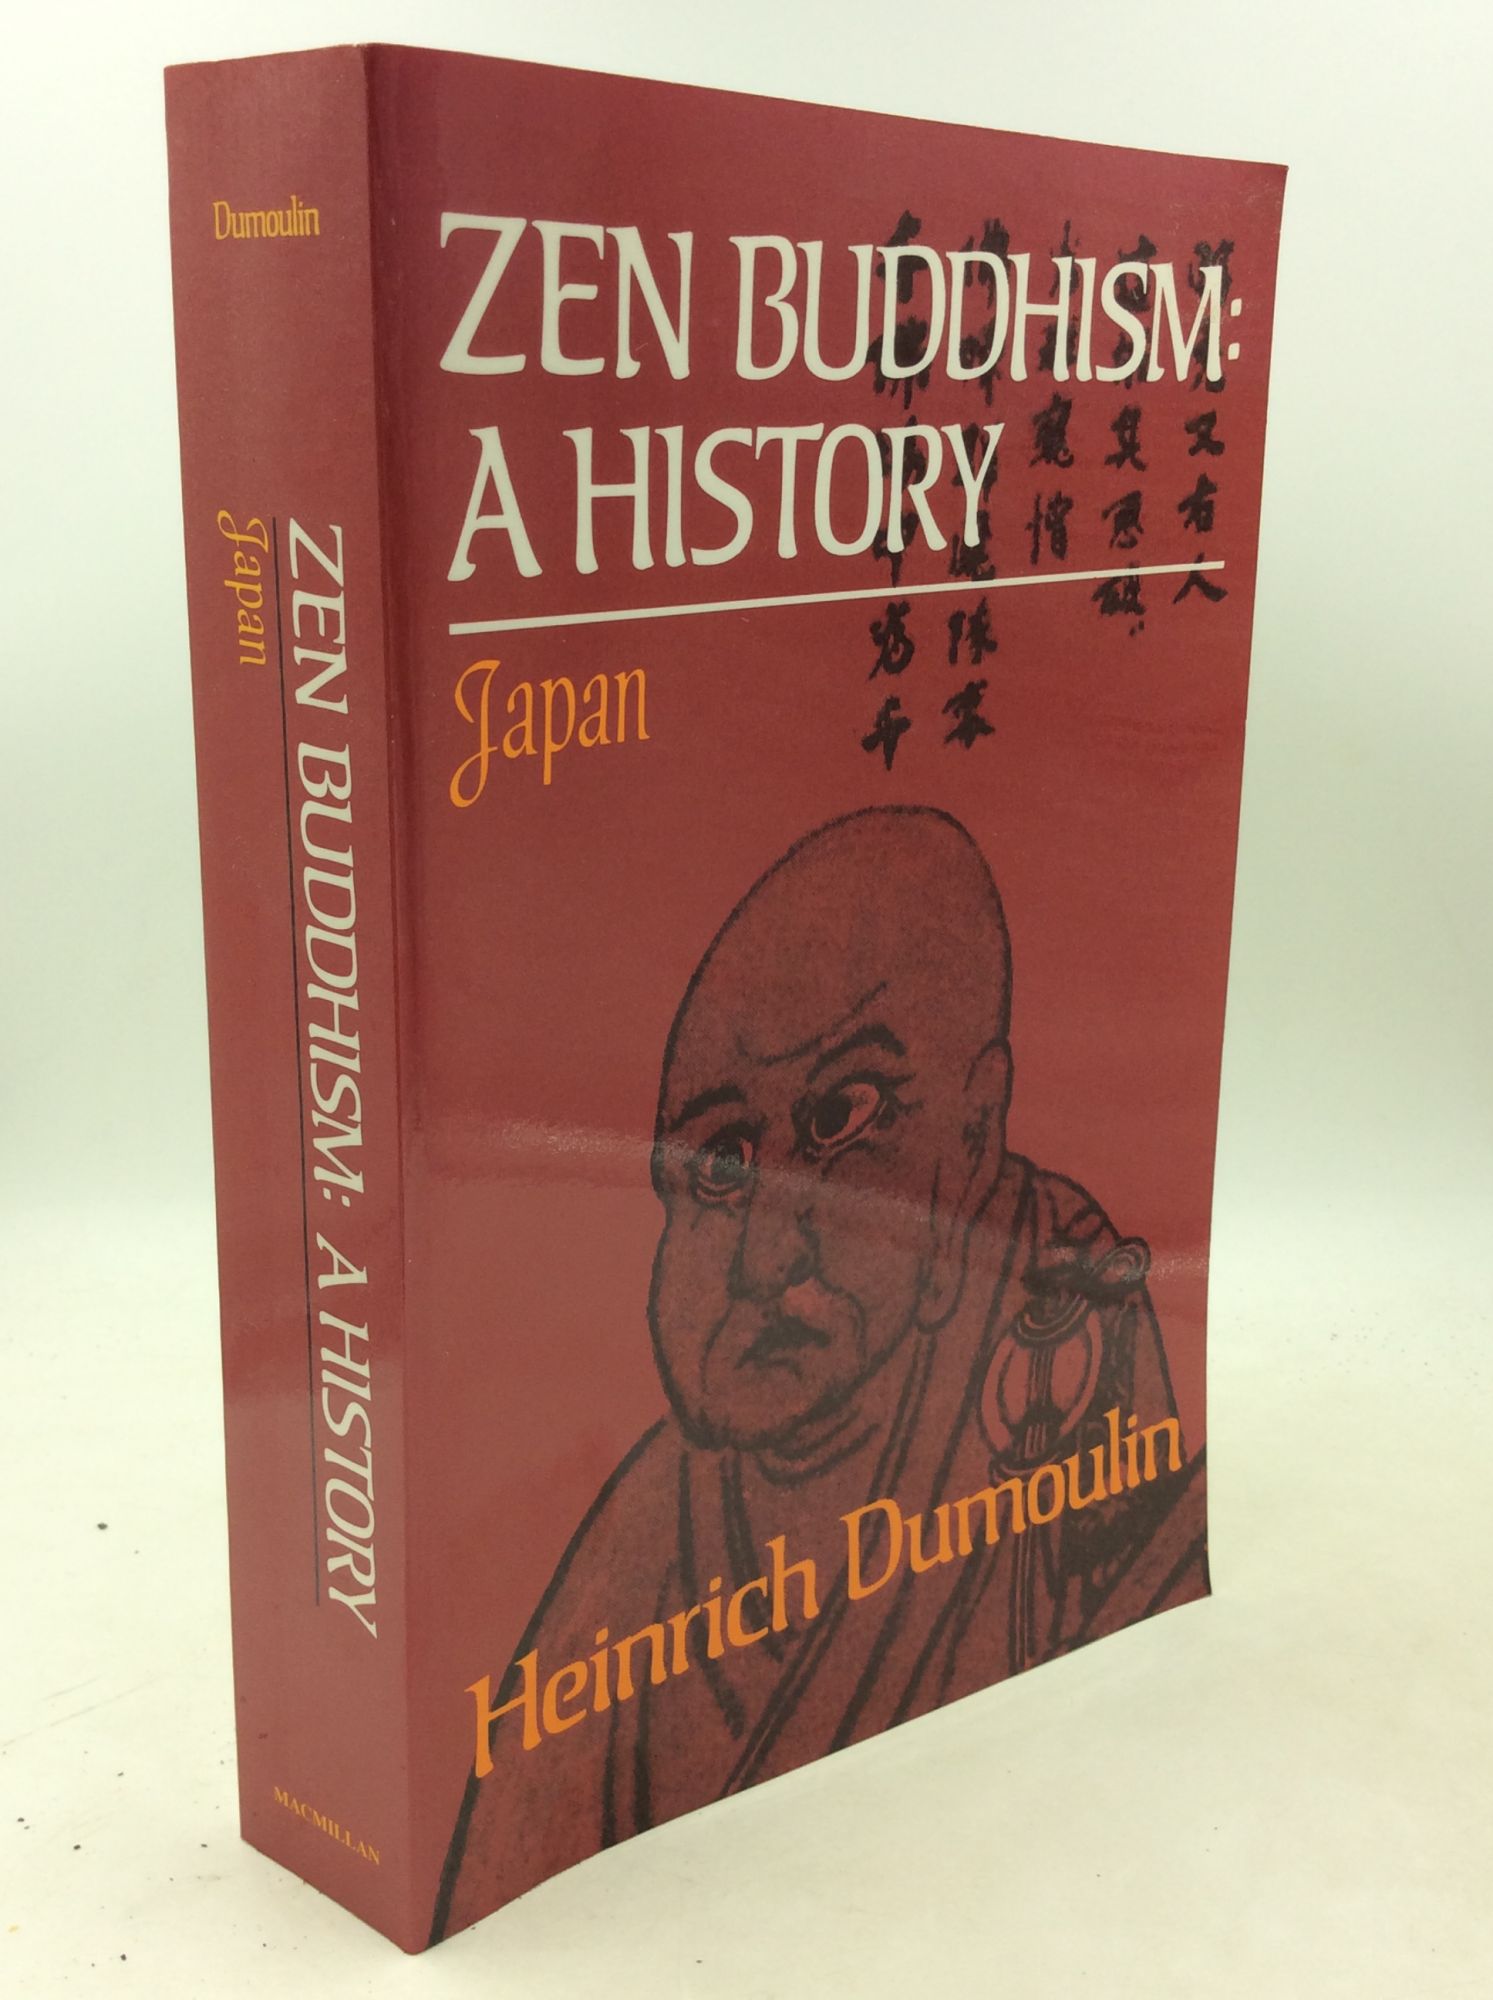 ZEN BUDDHISM: A HISTORY, Volume 2: Japan - Heinrich Dumoulin